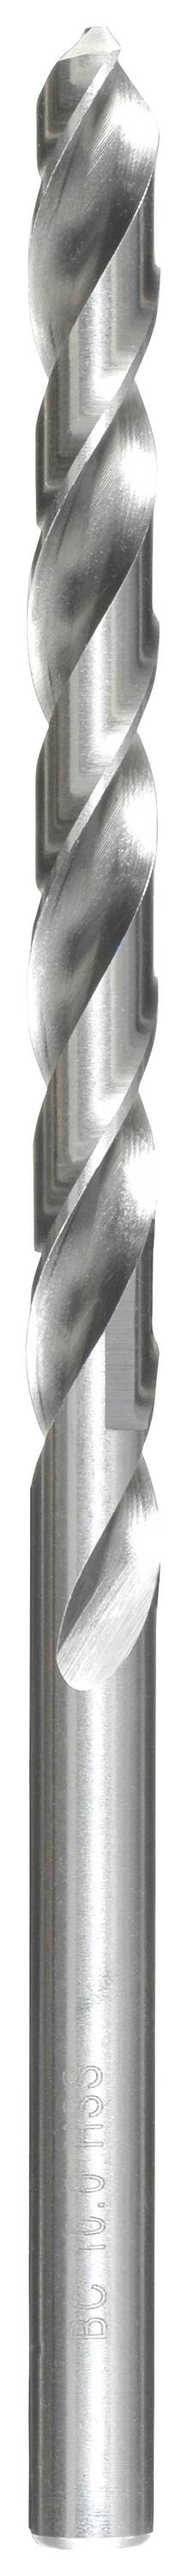 KWB 217065 HSS Spiralbohrer 1 Stück 6.5 mm Gesamtlänge 149 mm DIN 340 Zahnkranzbohrfutter 1 St.